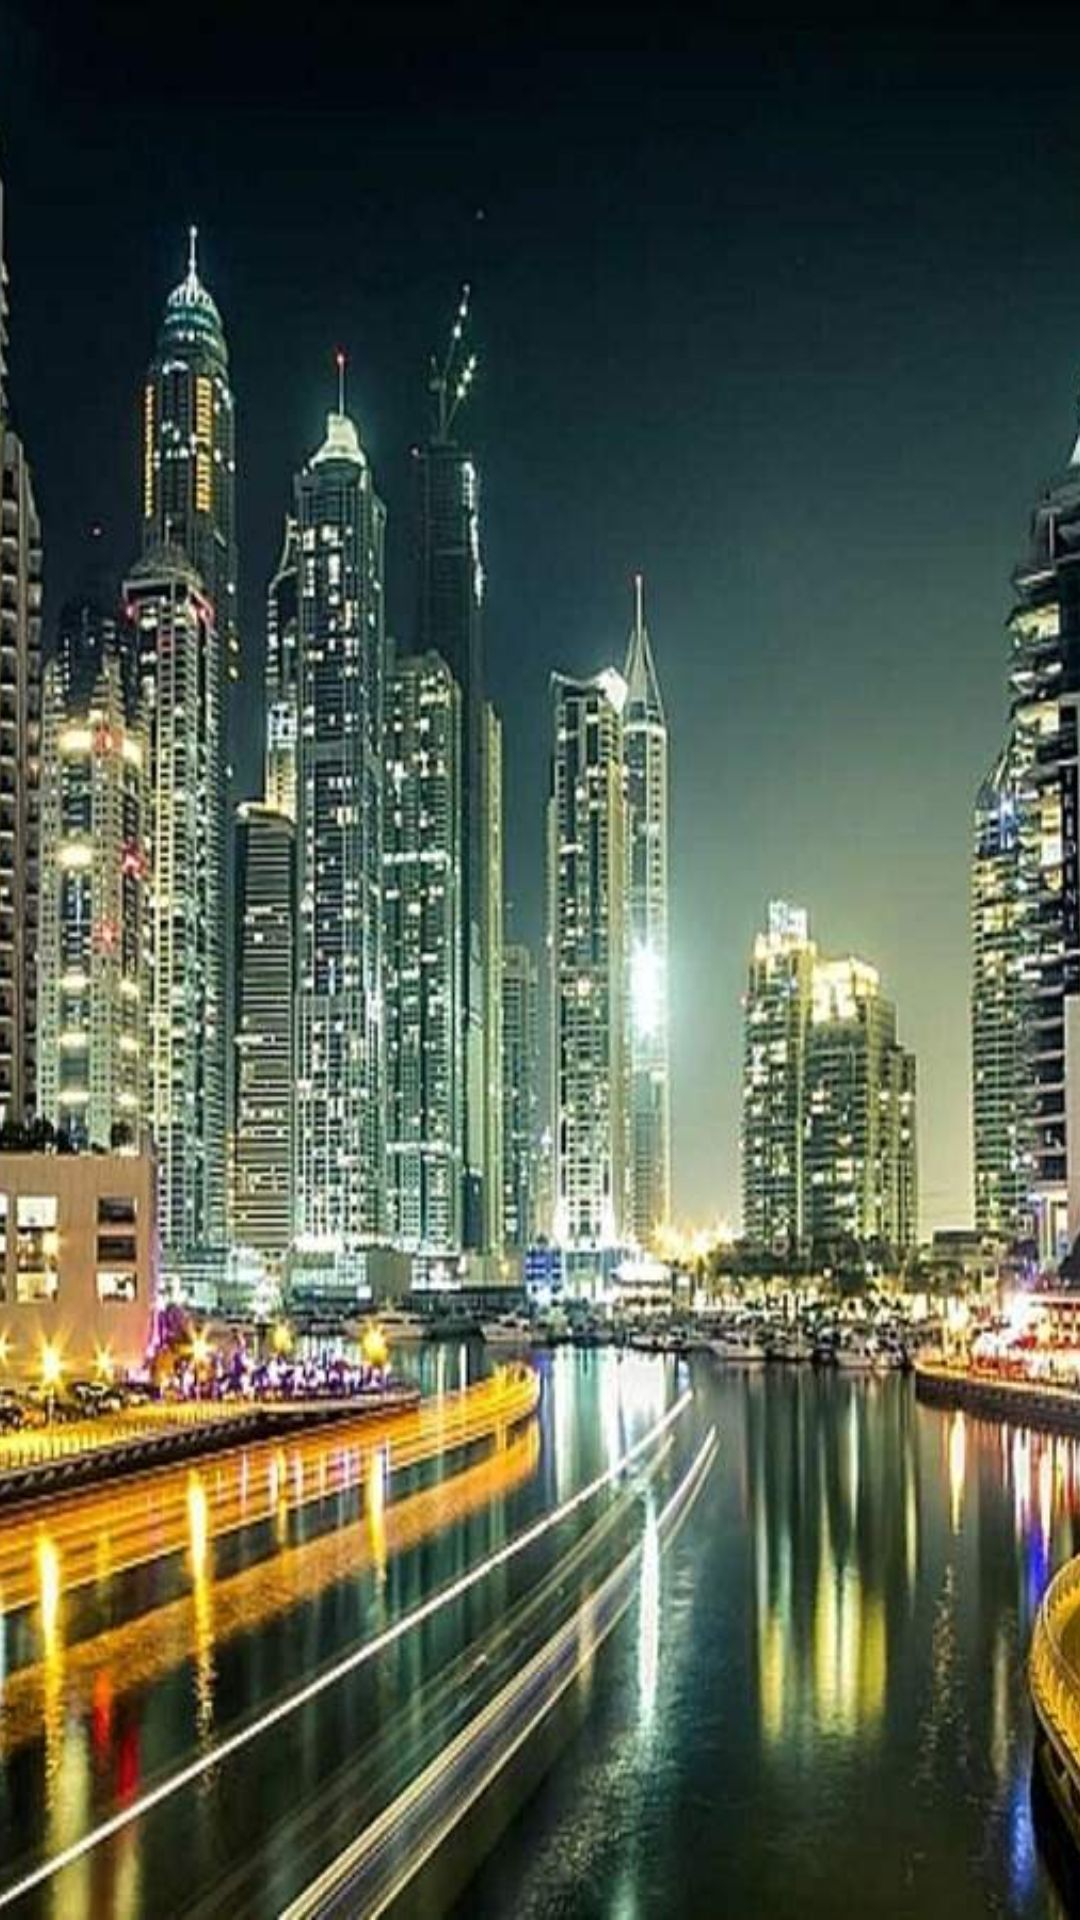 दुबई को इन 7 वजहों से कहा जाता है अजूबों का शहर